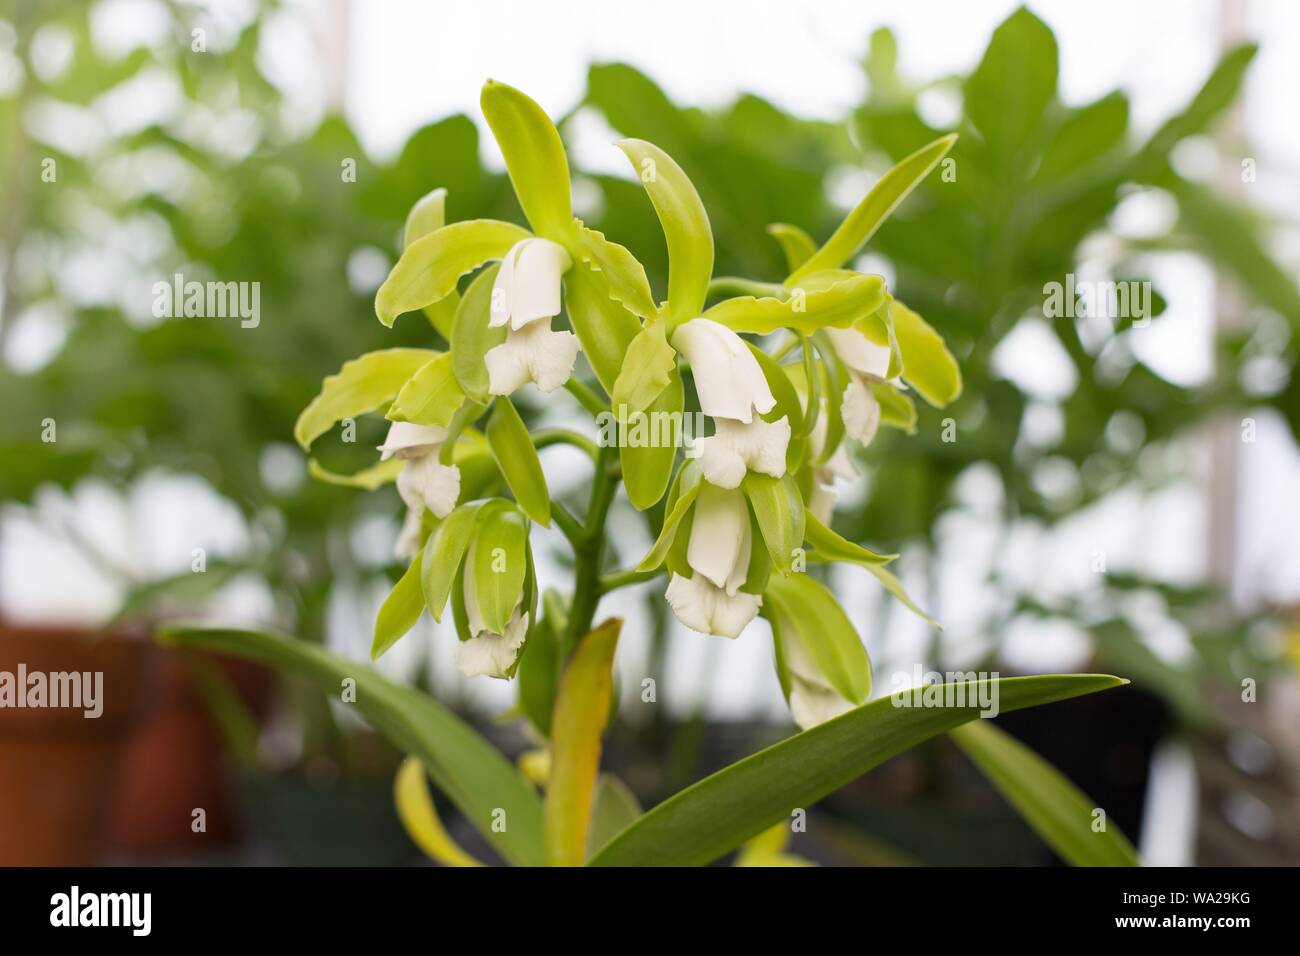 Cattleya leopoldii v. alba. Stock Photo